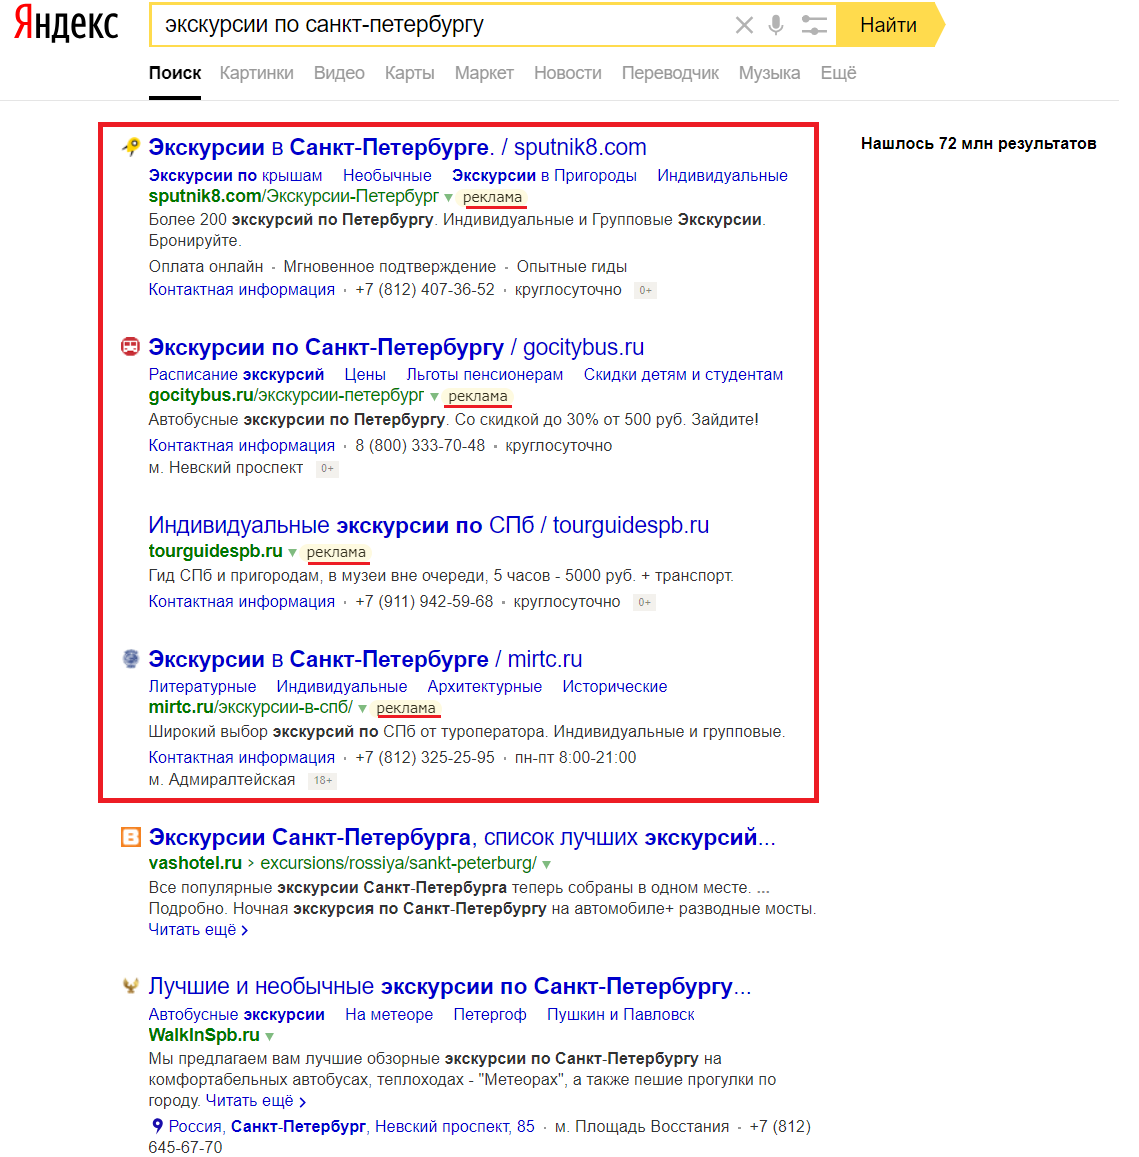 Блок спецразмещения в Яндексе